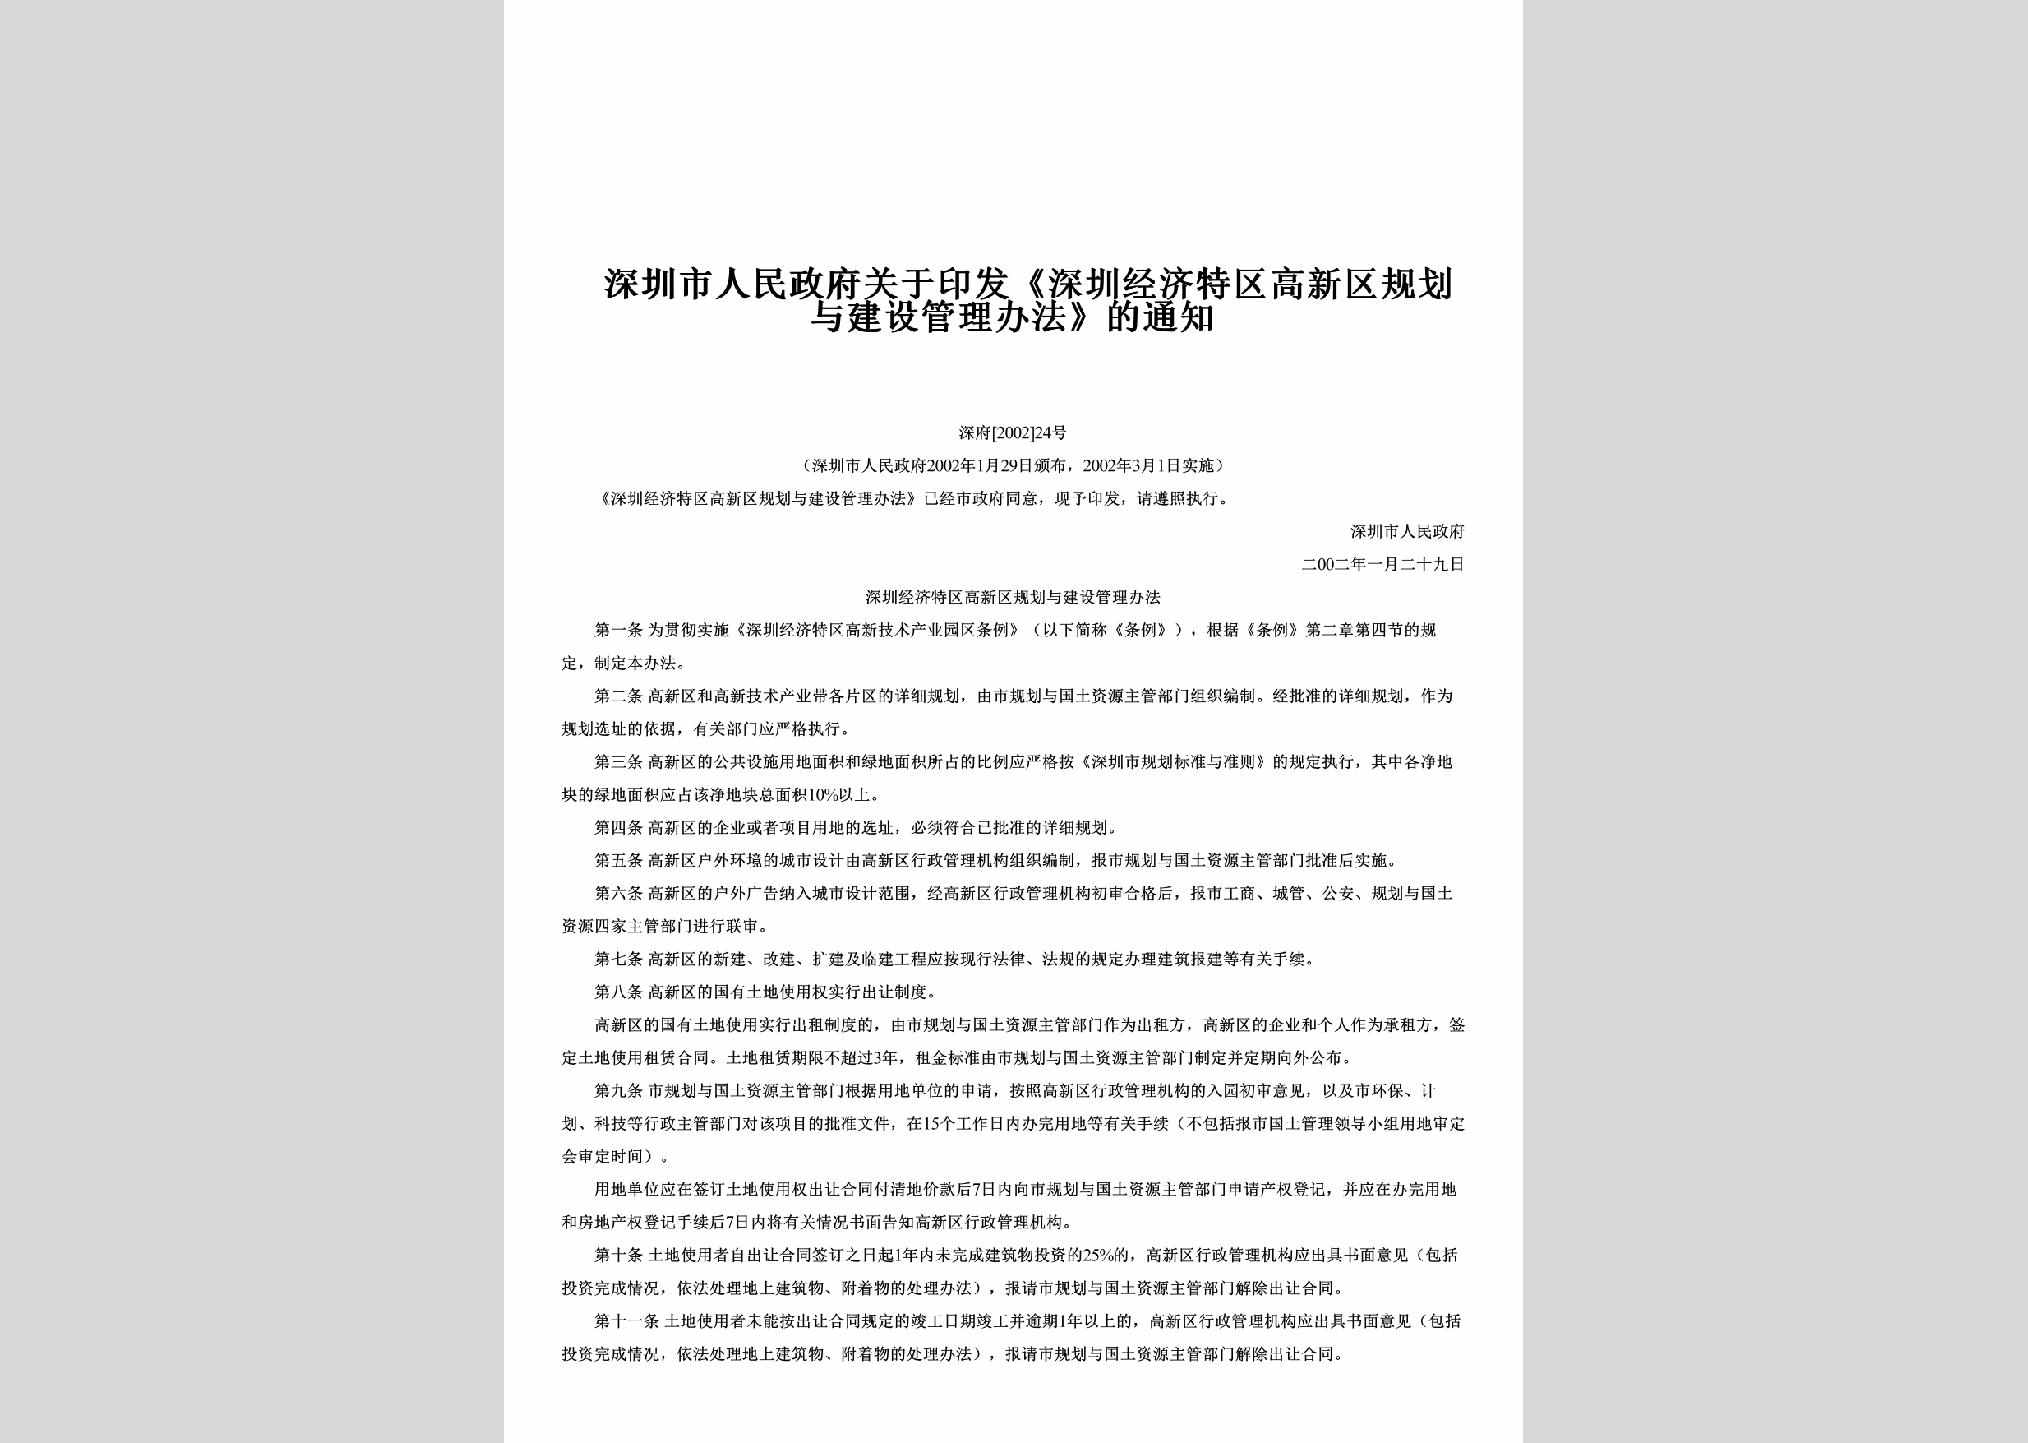 深府[2002]24号：关于印发《深圳经济特区高新区规划与建设管理办法》的通知